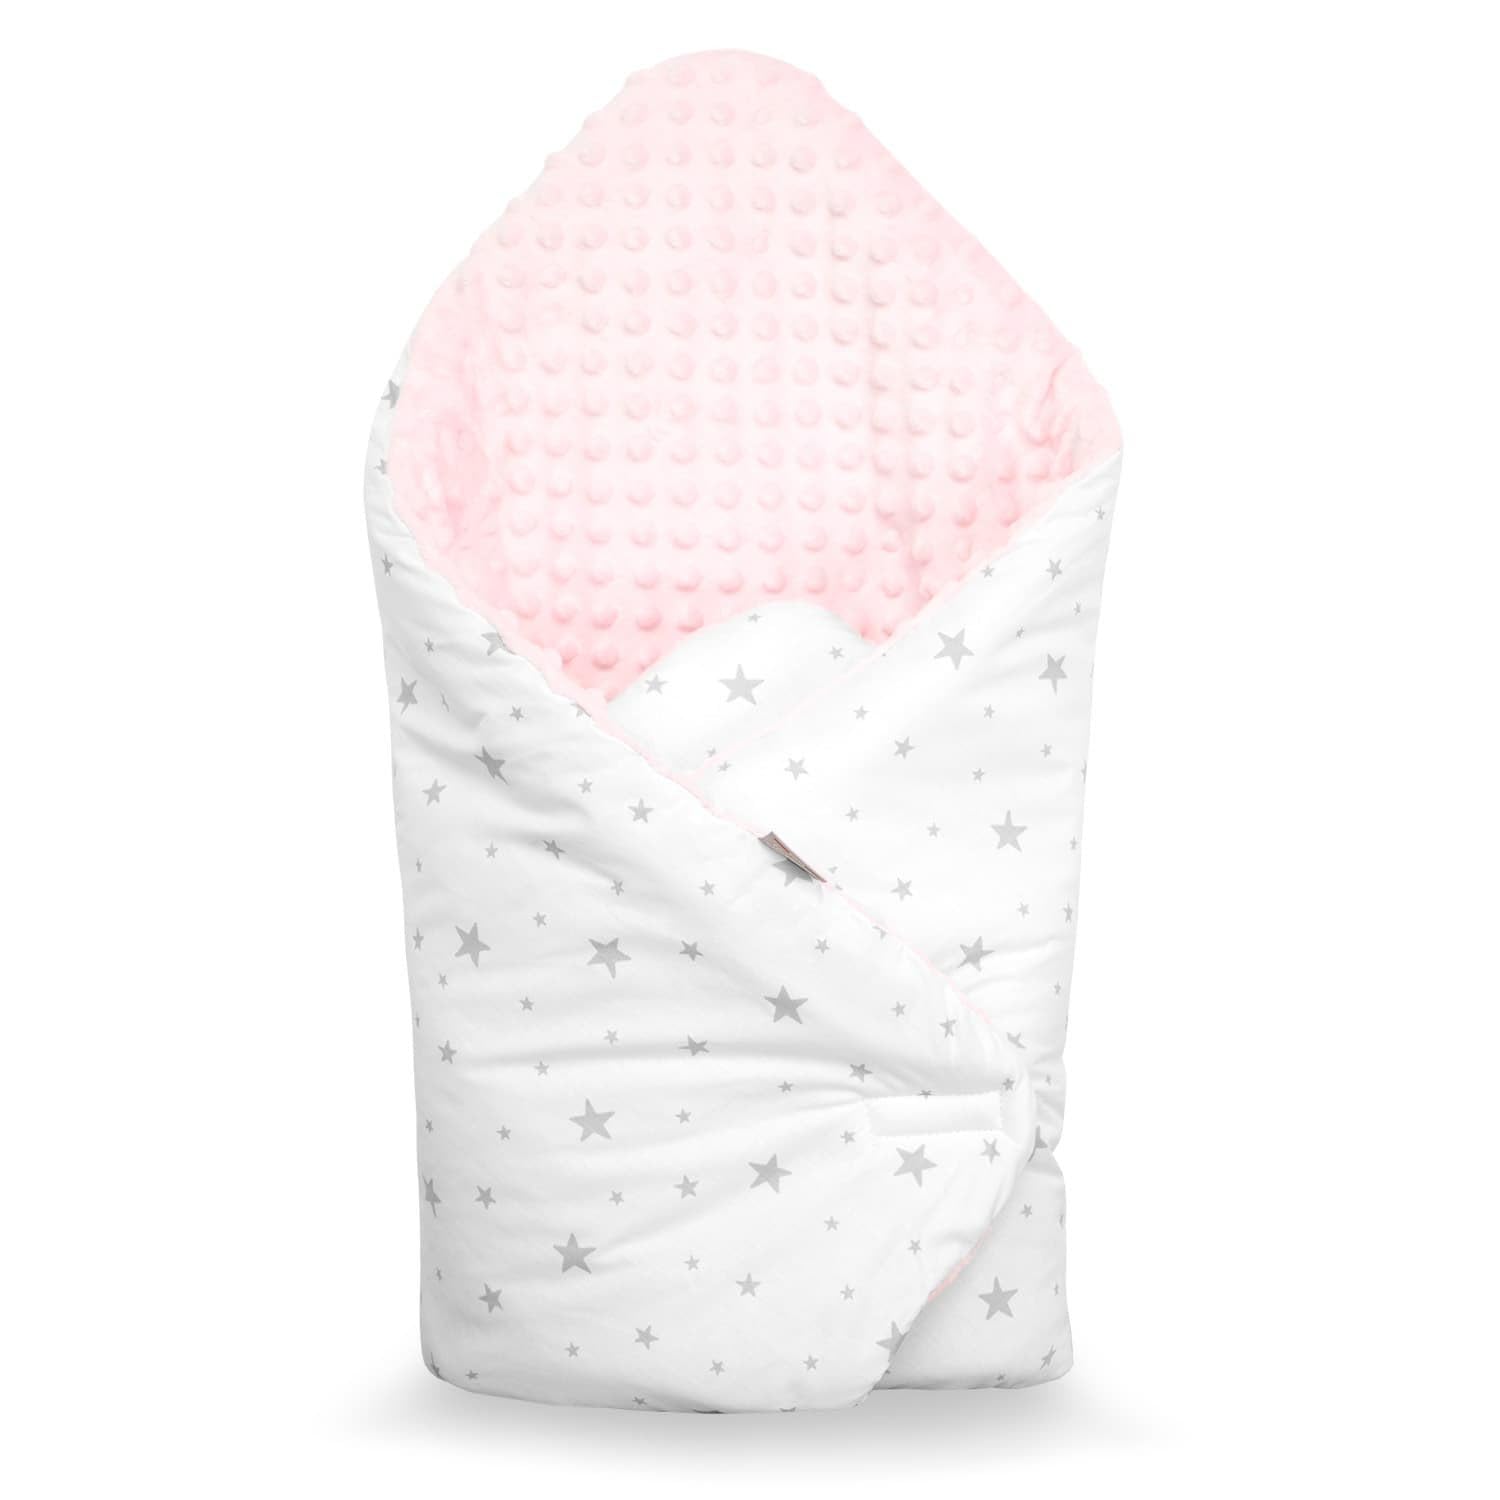 Sevira Kids - Pucksack – Winter – Baby – vielseitig verwendbar – 100% Baumwolle – Mincky wendbar – Babynest – Geschenk zur Geburt – Stella Rosa – 80 x 80 cm